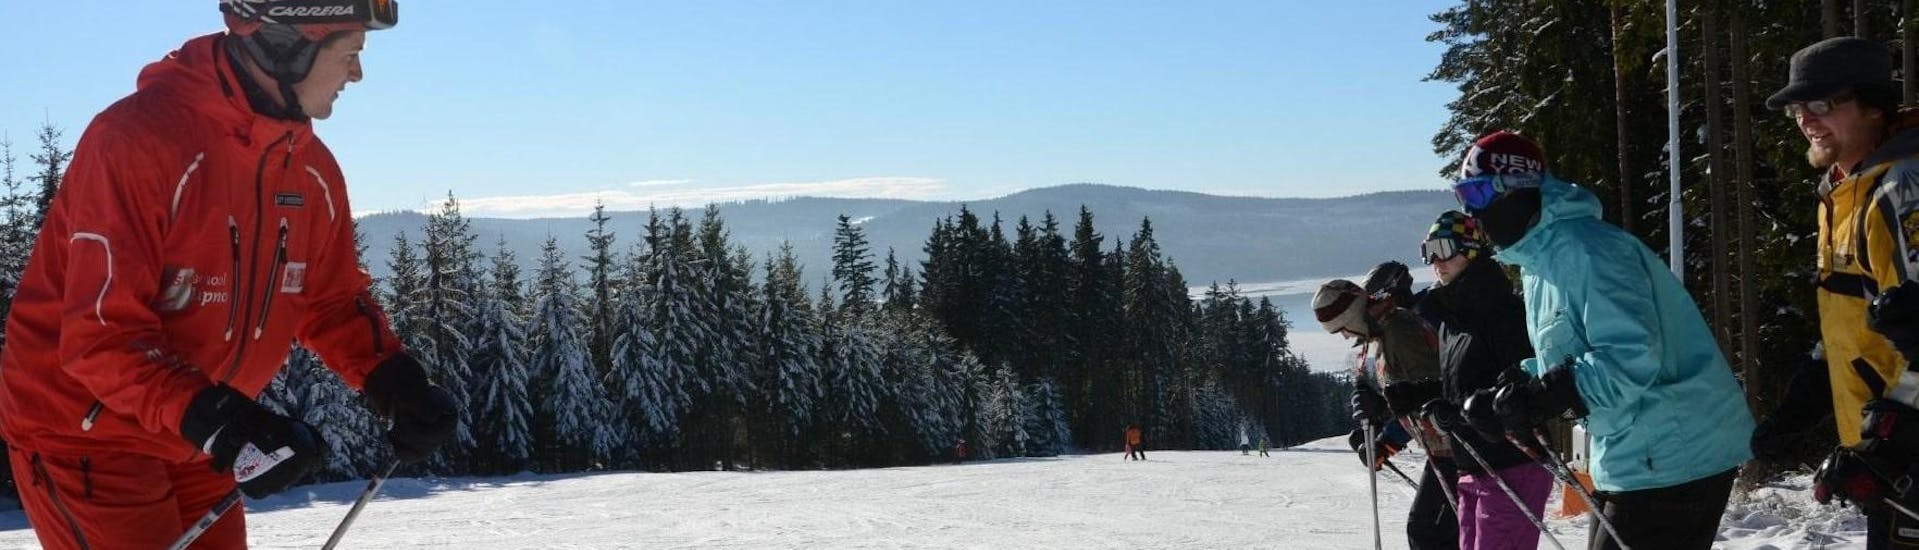 Clases de esquí para adultos a partir de 16 años para todos los niveles.